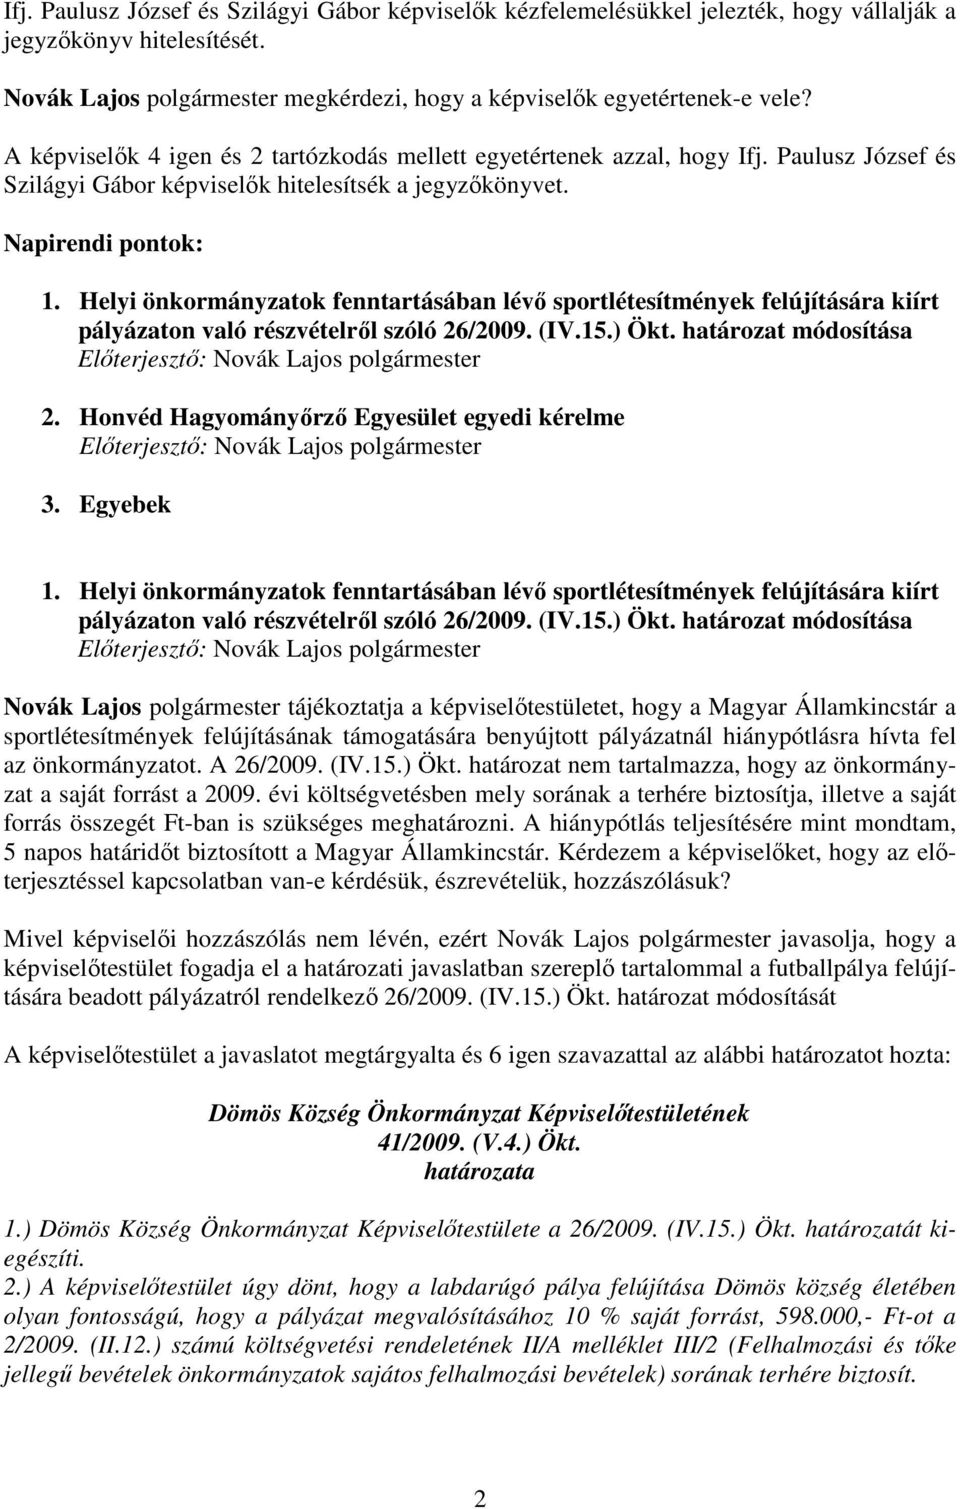 Helyi önkormányzatok fenntartásában lévı sportlétesítmények felújítására kiírt pályázaton való részvételrıl szóló 26/2009. (IV.15.) Ökt. határozat módosítása 2.